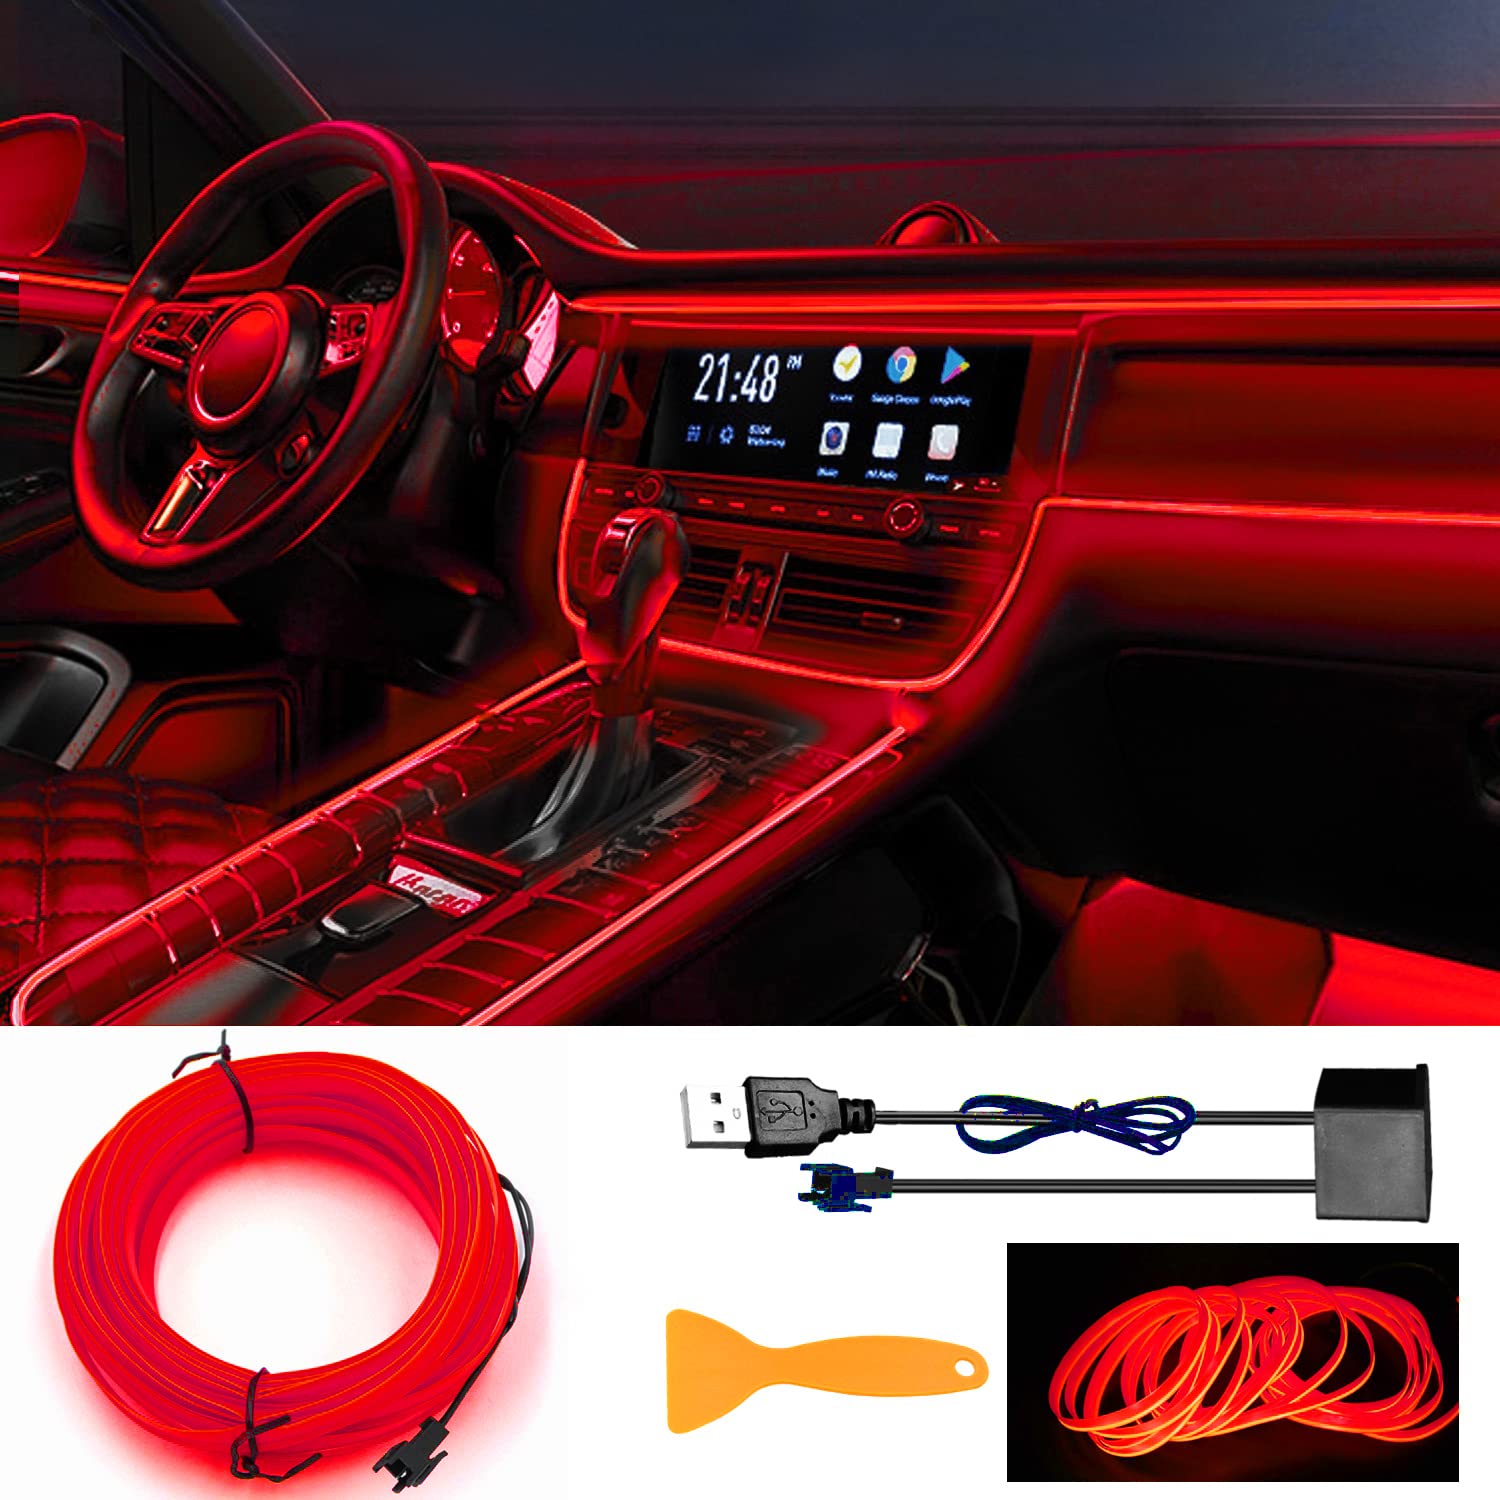 EL Wires Car Kit, EL Draht, EL Draht Neon Leuchtende, Flexible Neon EL Draht, USB EL Wire, Flexible Neonlichtröhre 5m/16.5ft Auto Dekorationen LED Lichter für Auto Interieur von YEKUYEKU